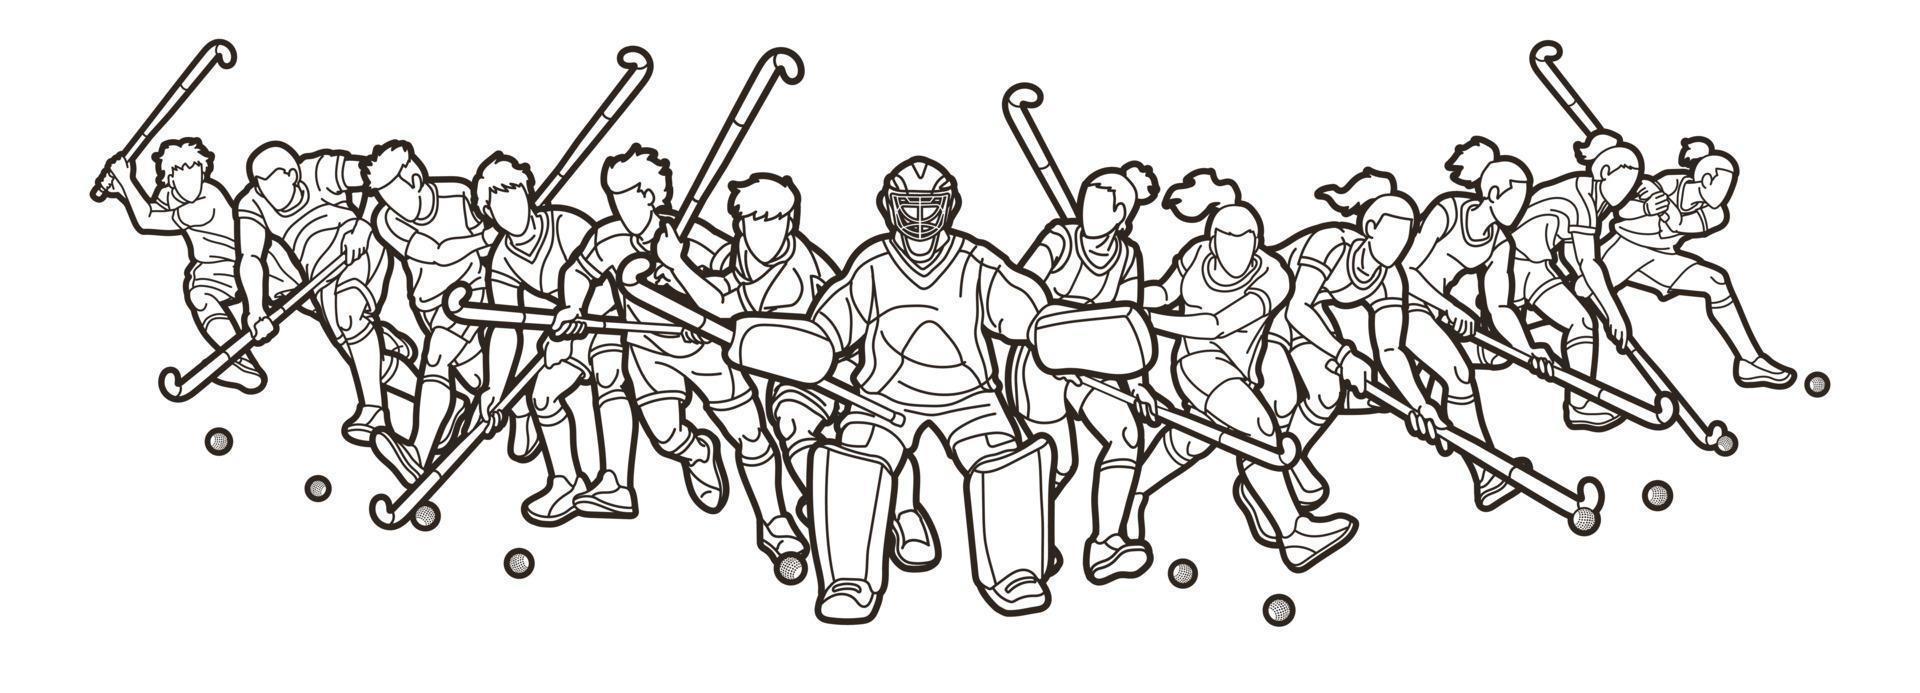 skizzieren sie feldhockey-sportmannschaft männliche und weibliche spieler handeln zusammen cartoon-grafikvektor vektor